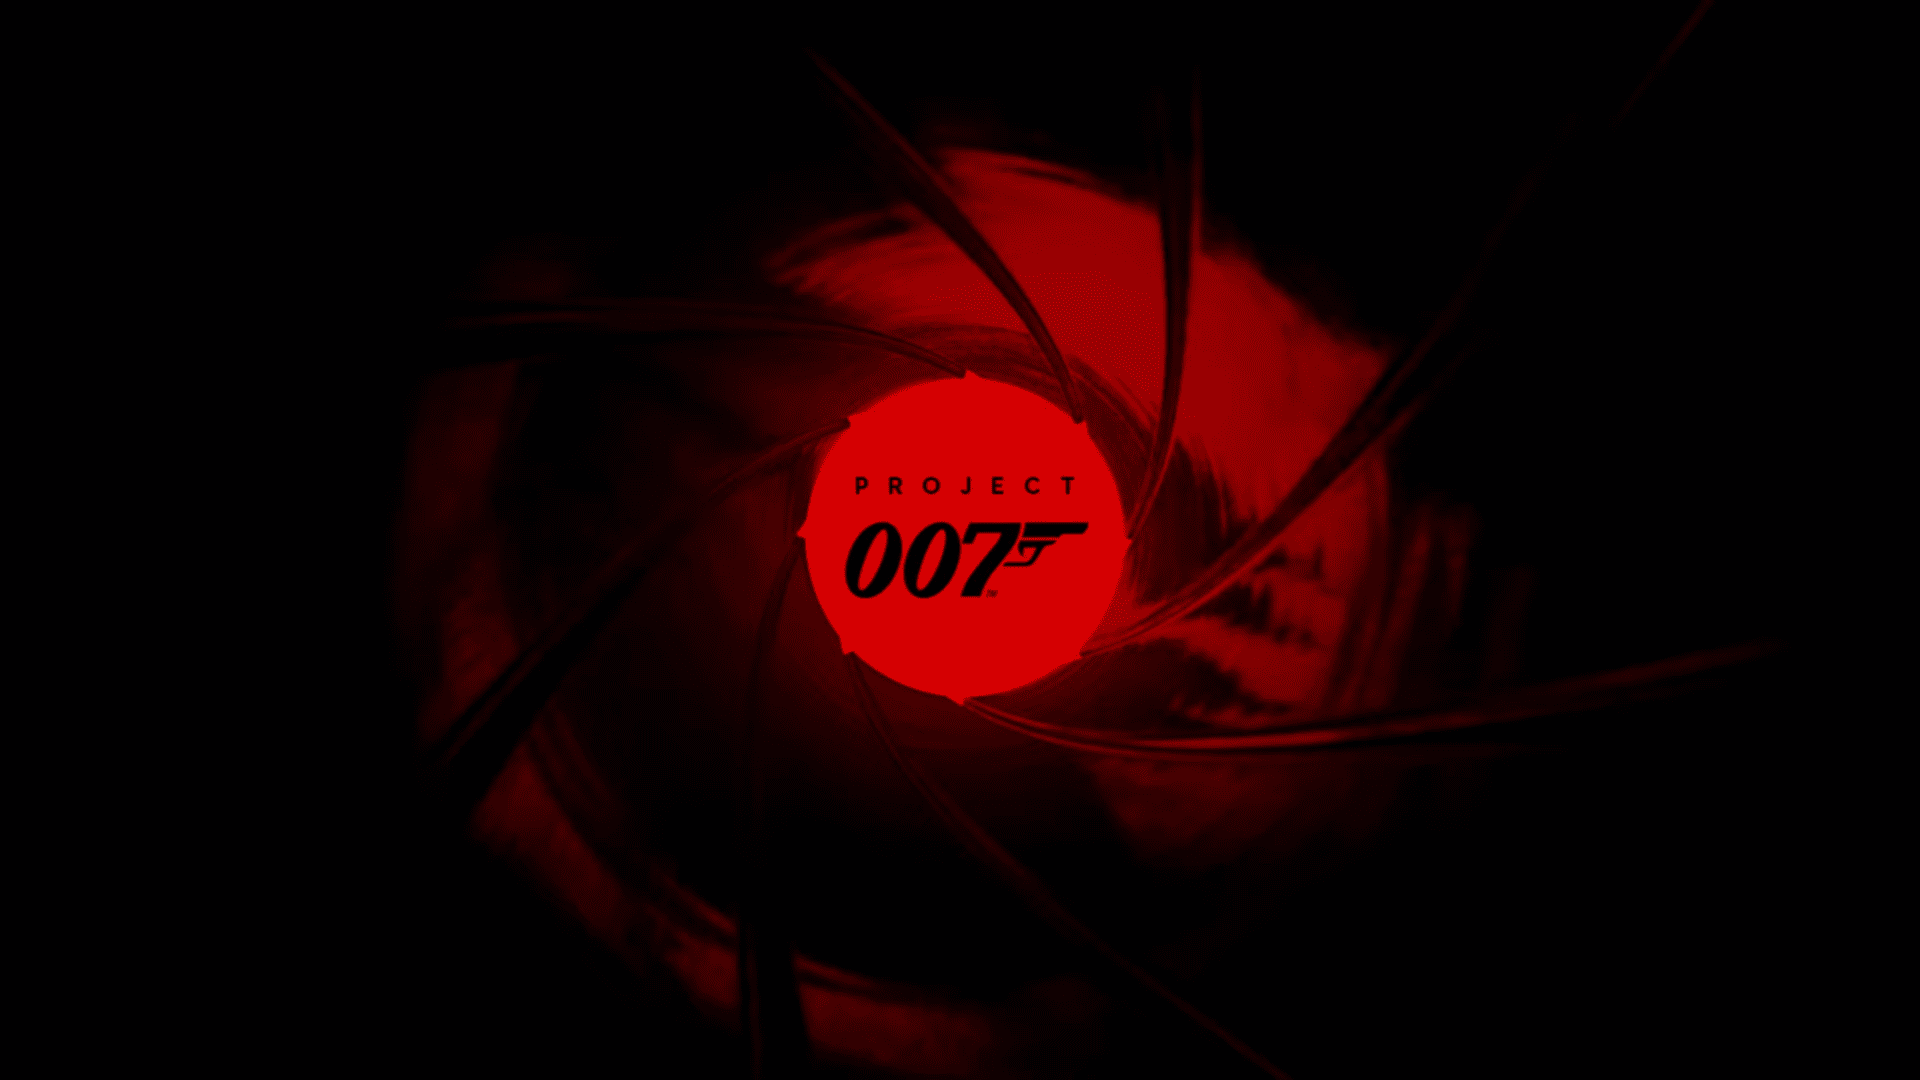 Project 007 - ein neues Spiel über James Bond wird von den Machern von Hitman bereitgestellt 13